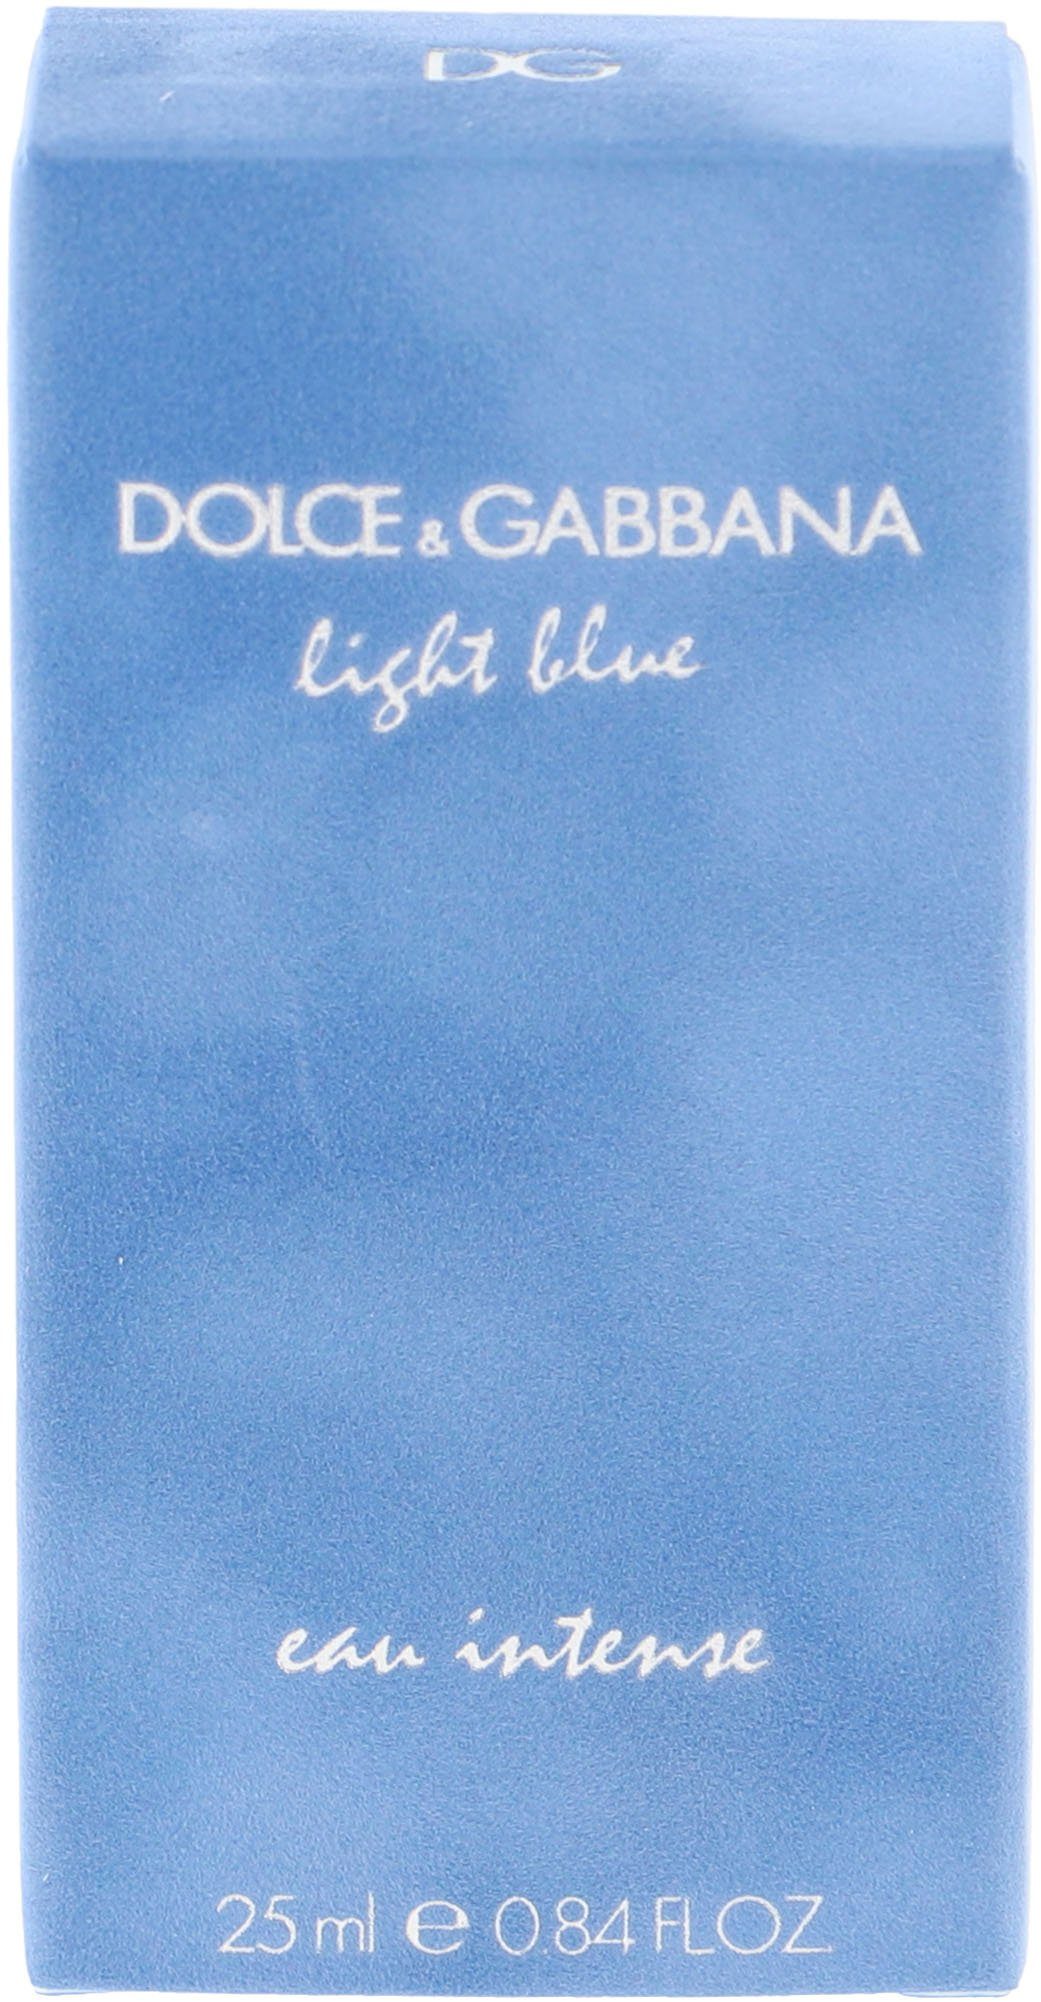 Blue Eau Femme de Light Pour GABBANA DOLCE & Parfum Intense